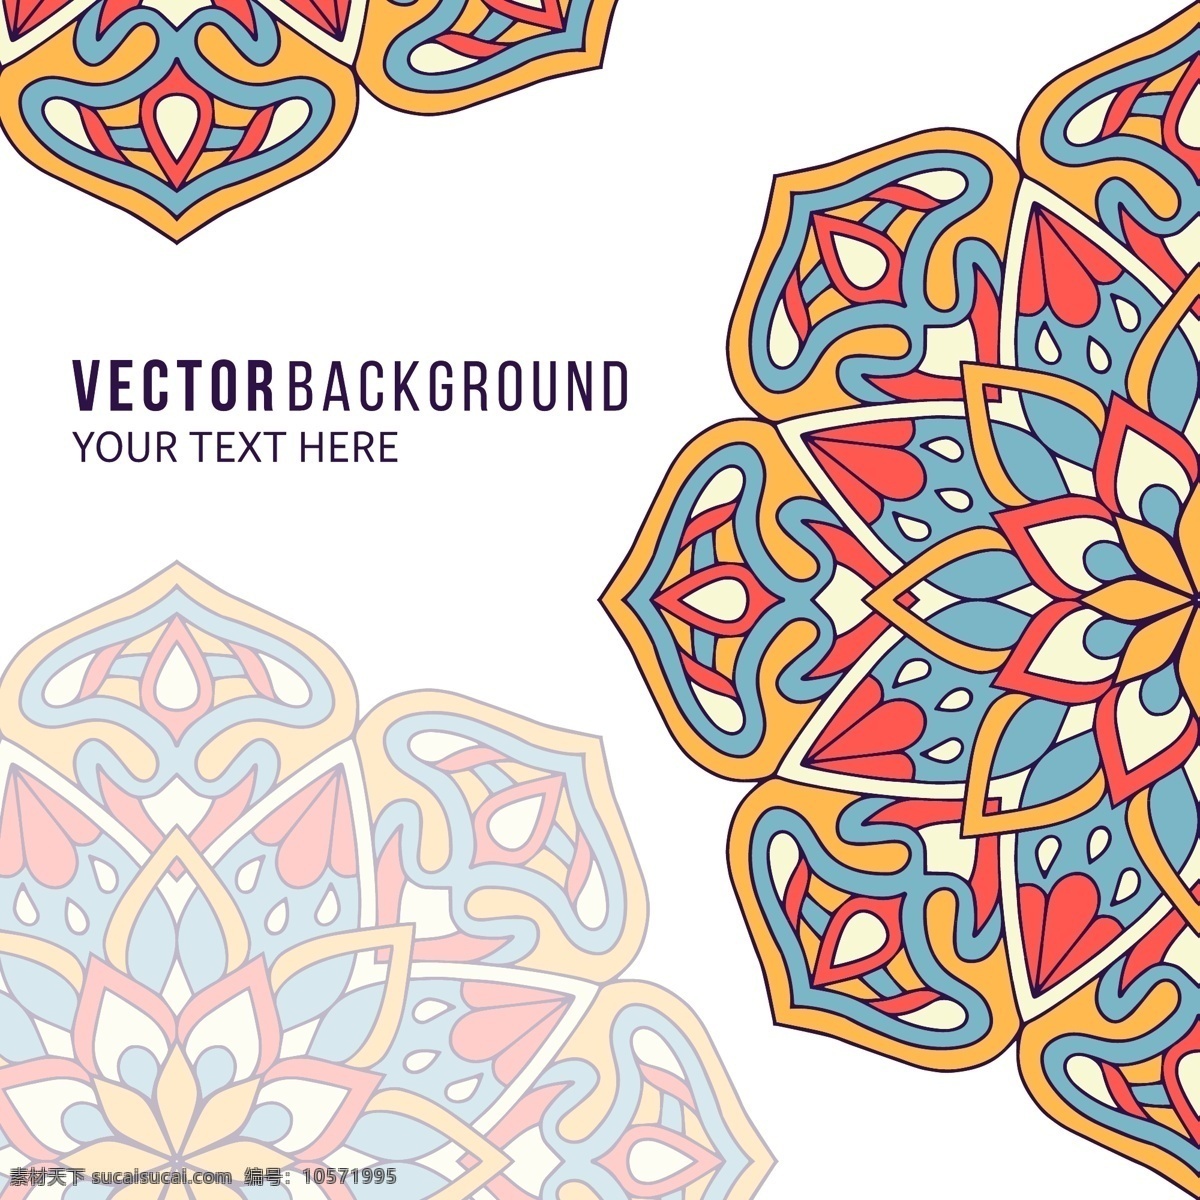 背景与曼荼罗 全彩色 花卉 抽象 装饰 曼荼罗 阿拉伯语 印度 形状 伊斯兰教 东方 象征 华丽 灵性 佛教 抽象形态 印度教